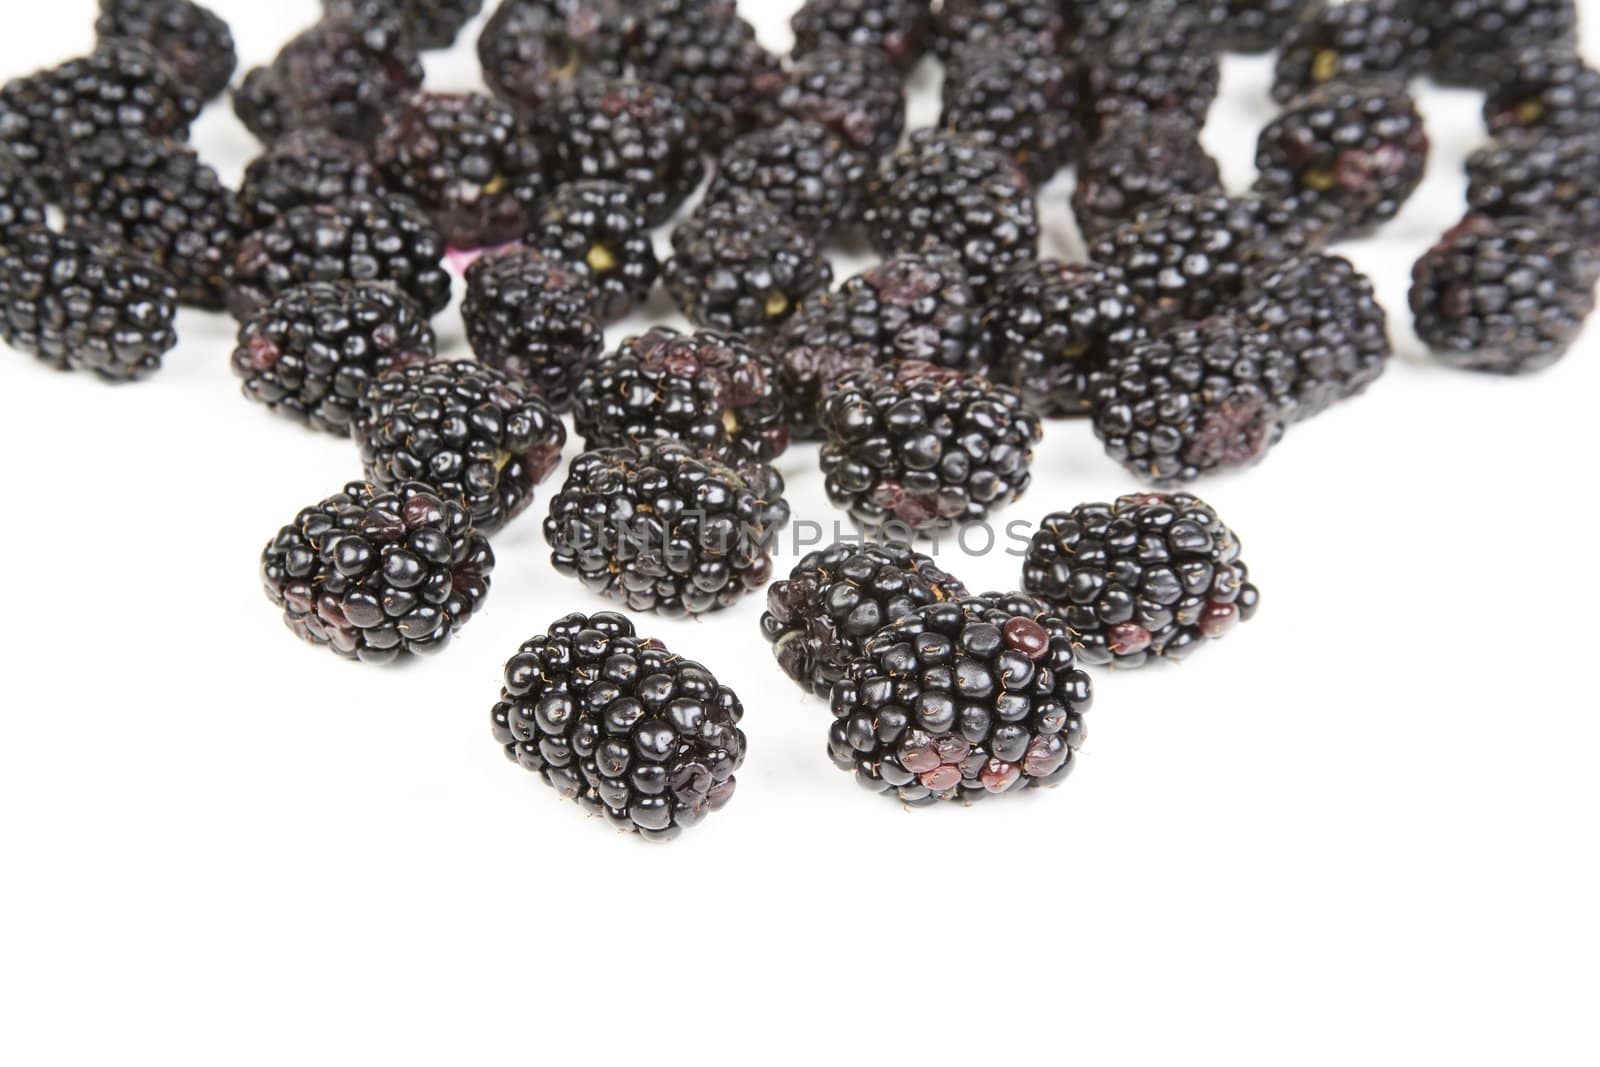 Blackberries by Creatista